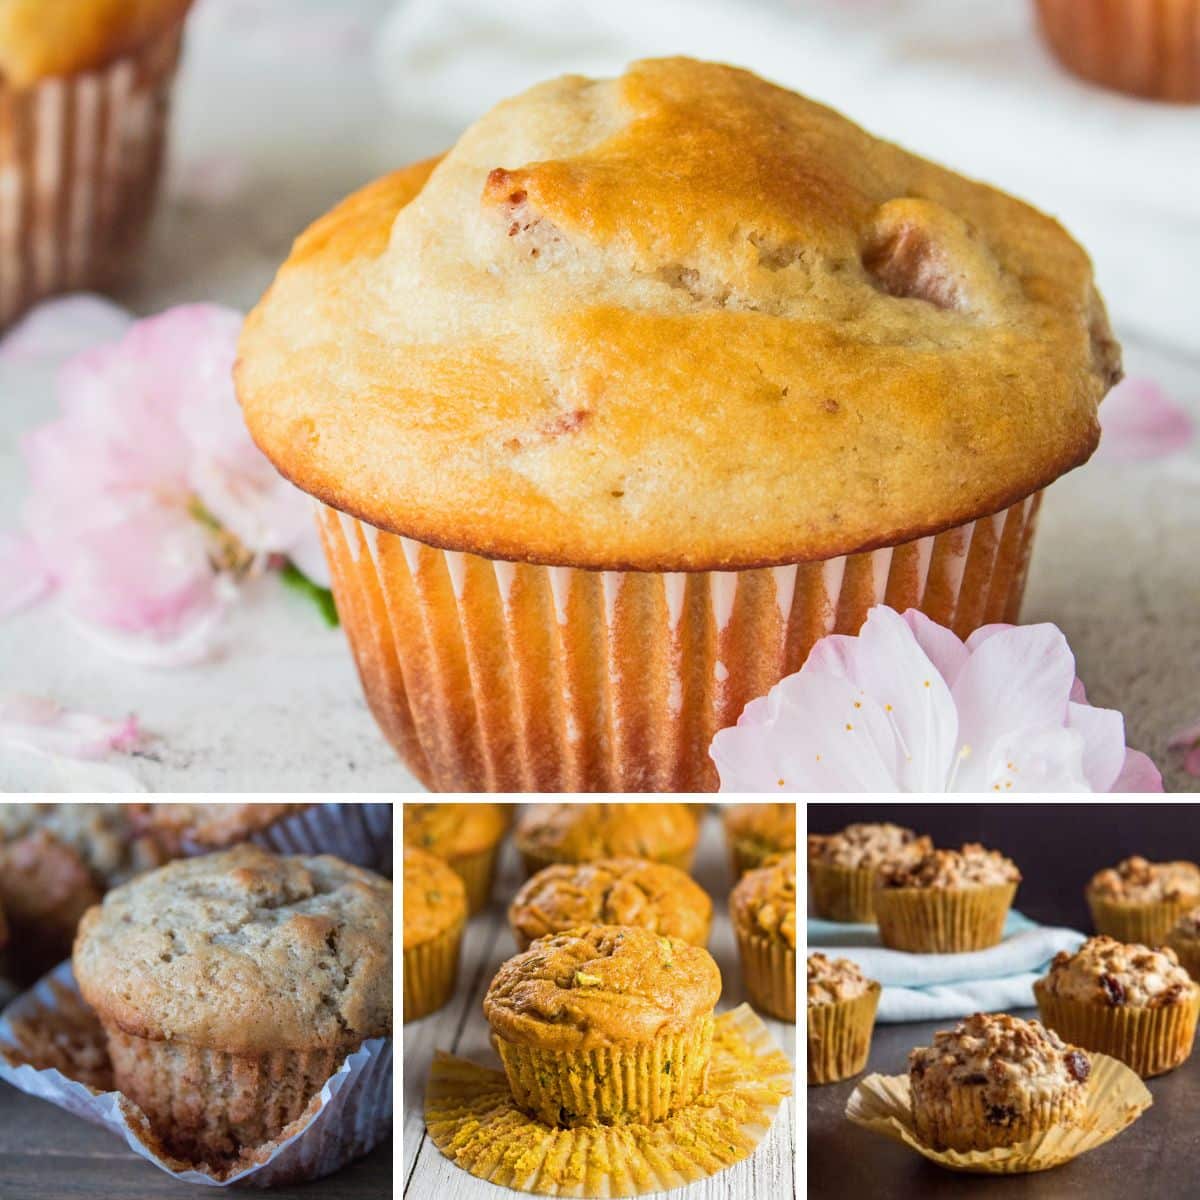 Il miglior collage di ricette per muffin con 4 muffin da cuocere e gustare.